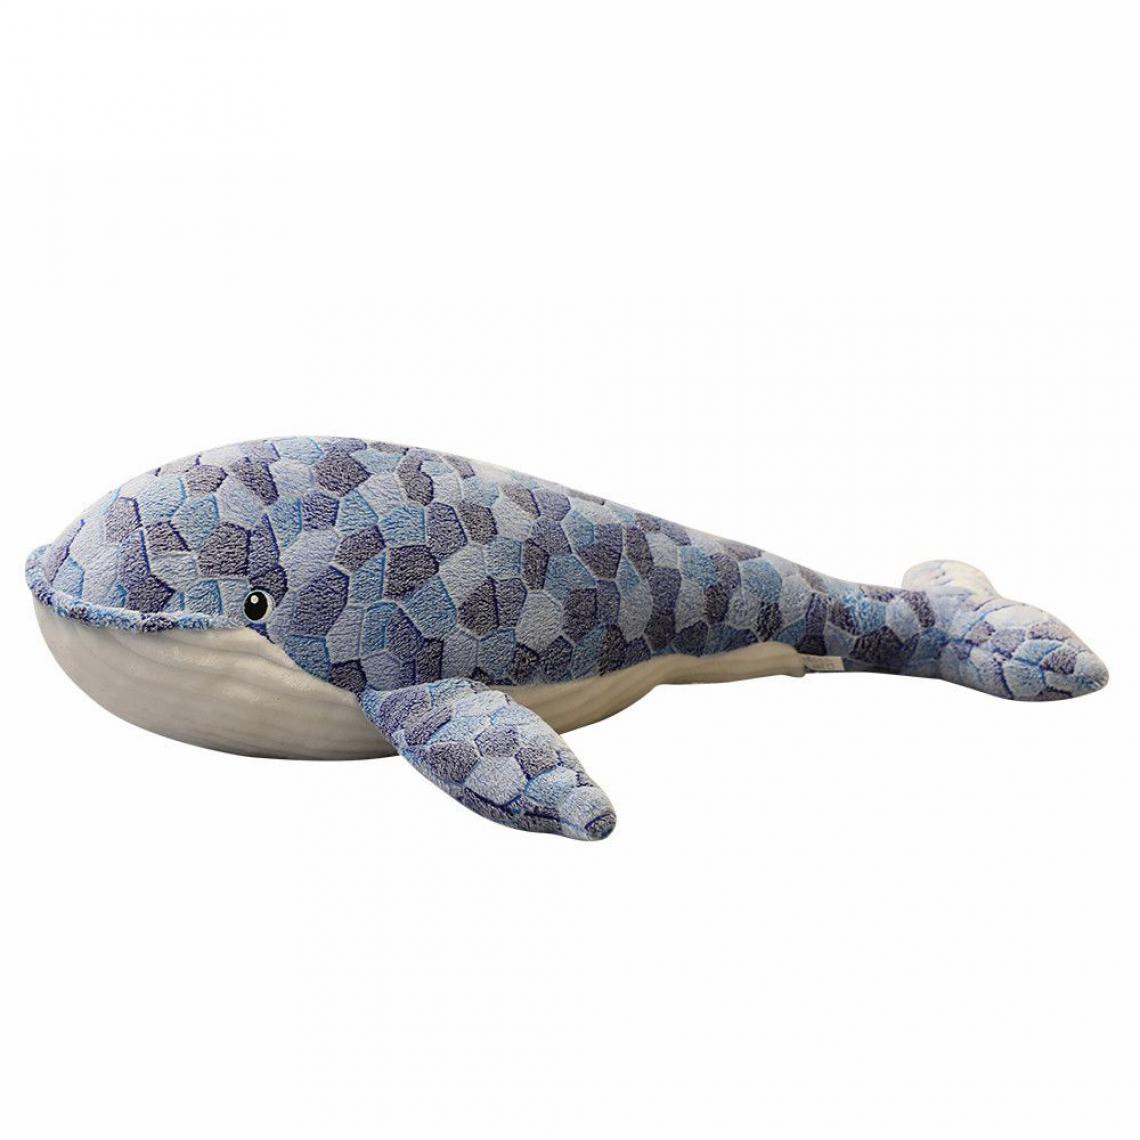 Generic - Poupées en Peluche Miaoowa Baleine , servir d’oreiller Pour enfant et adulte  50  cm - Blanc / Bleu  - Animaux